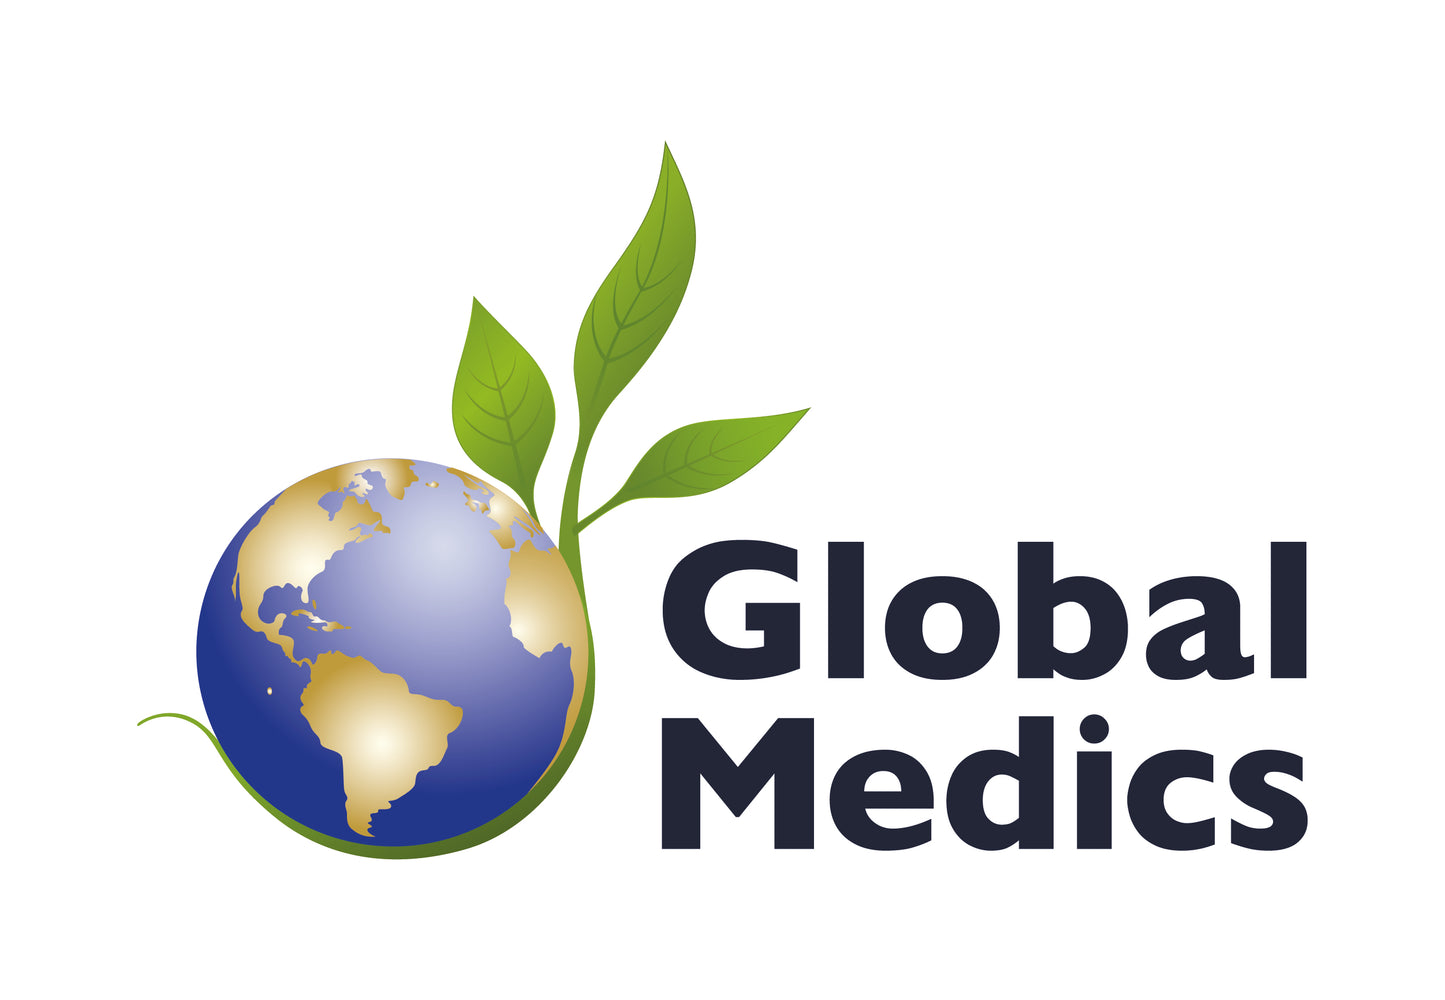 Global Medics - Elektrolyten - Elektrolyten